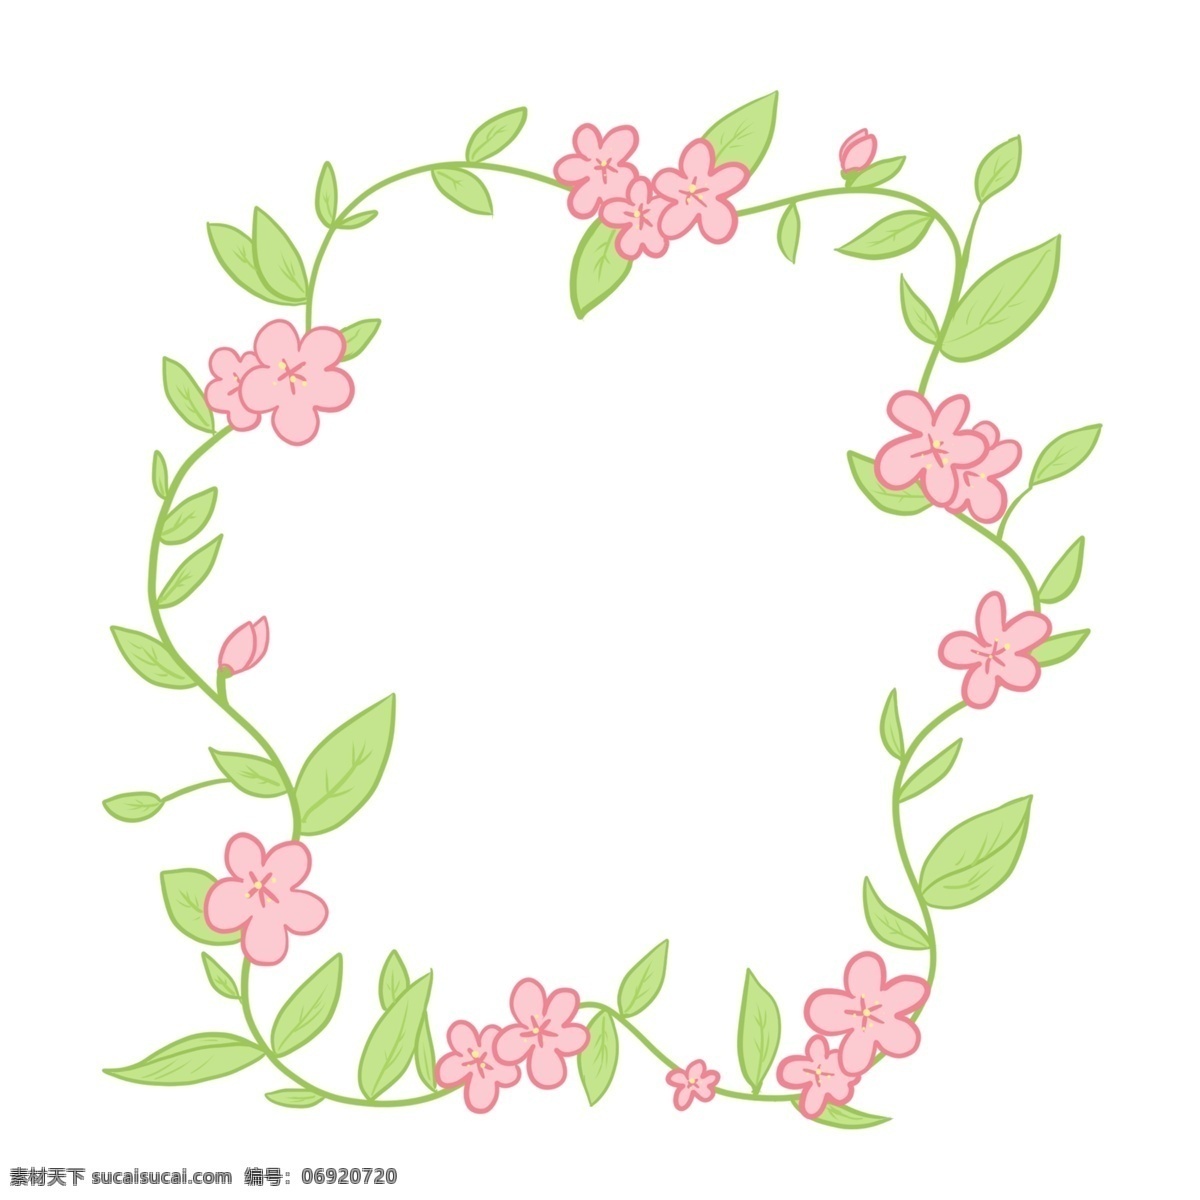 漂亮 花朵 边框 插图 春天花朵 粉色花朵 漂亮的边框 花朵边框插图 绿色叶子 春季花朵边框 花